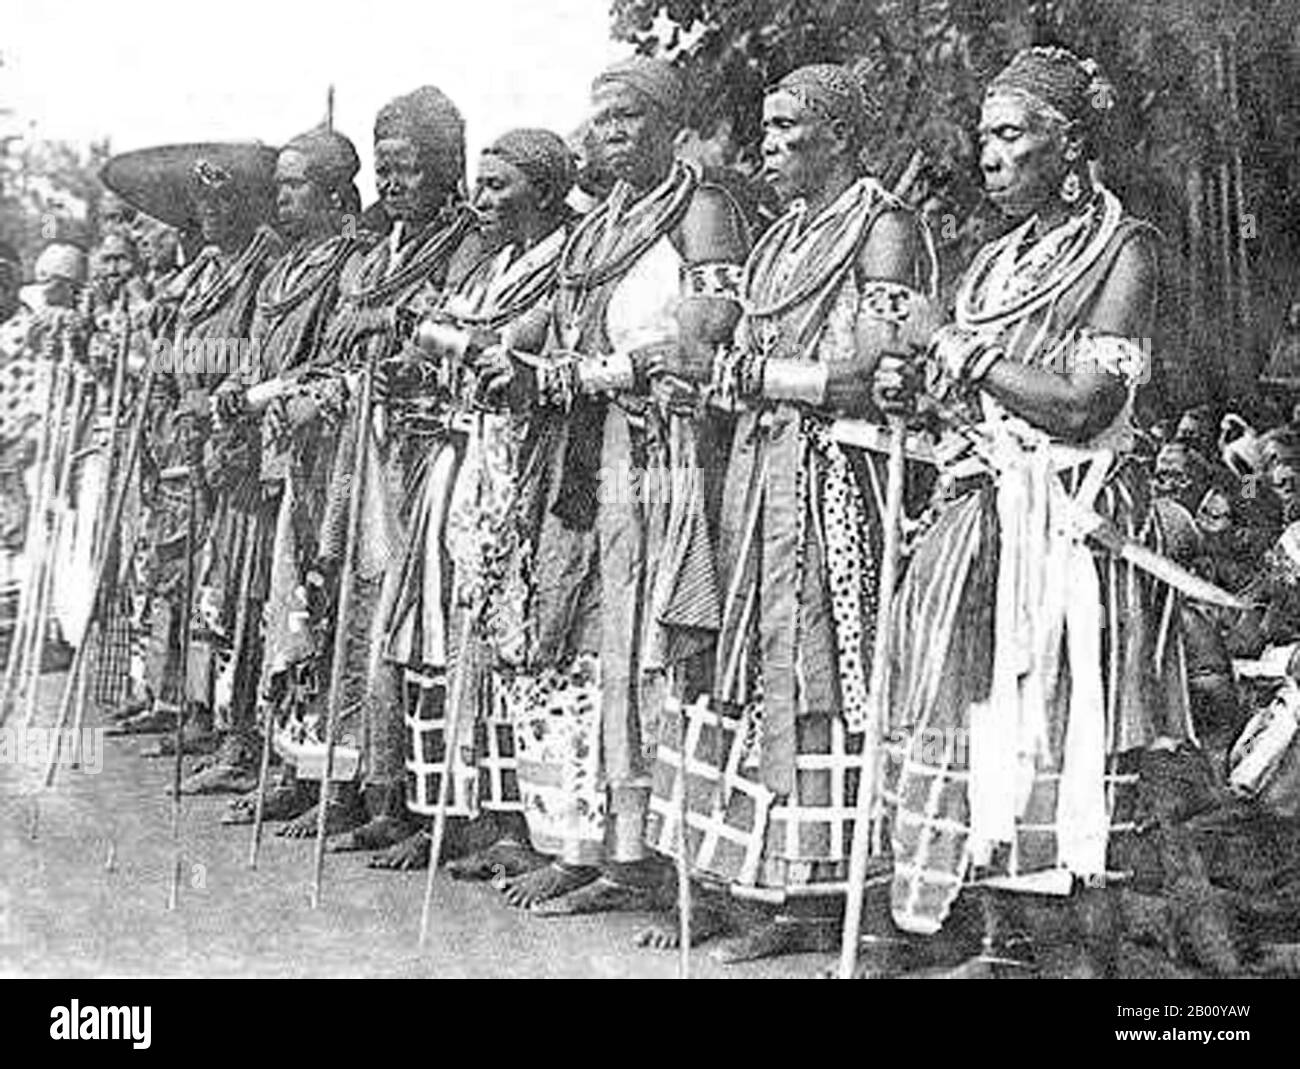 Benín/Dahomey: Grupo de Mino o o 'Dahomey Amazons' jubilados. Foto de Edmond Fortier (1862-1918), 1908. Las Amazonas de Dahomey o Mino eran un regimiento militar de Fon todas las mujeres del Reino de Dahomey (ahora Benin) que duró hasta finales del siglo 19. Los Mino fueron reclutados entre los ahosi ('esposas del rey') de los cuales a menudo había cientos. Algunas mujeres de la sociedad Fon se convirtieron en ahosi voluntariamente, mientras que otras fueron inscritas involuntariamente si sus maridos o padres se quejaban al Rey acerca de su comportamiento. Foto de stock